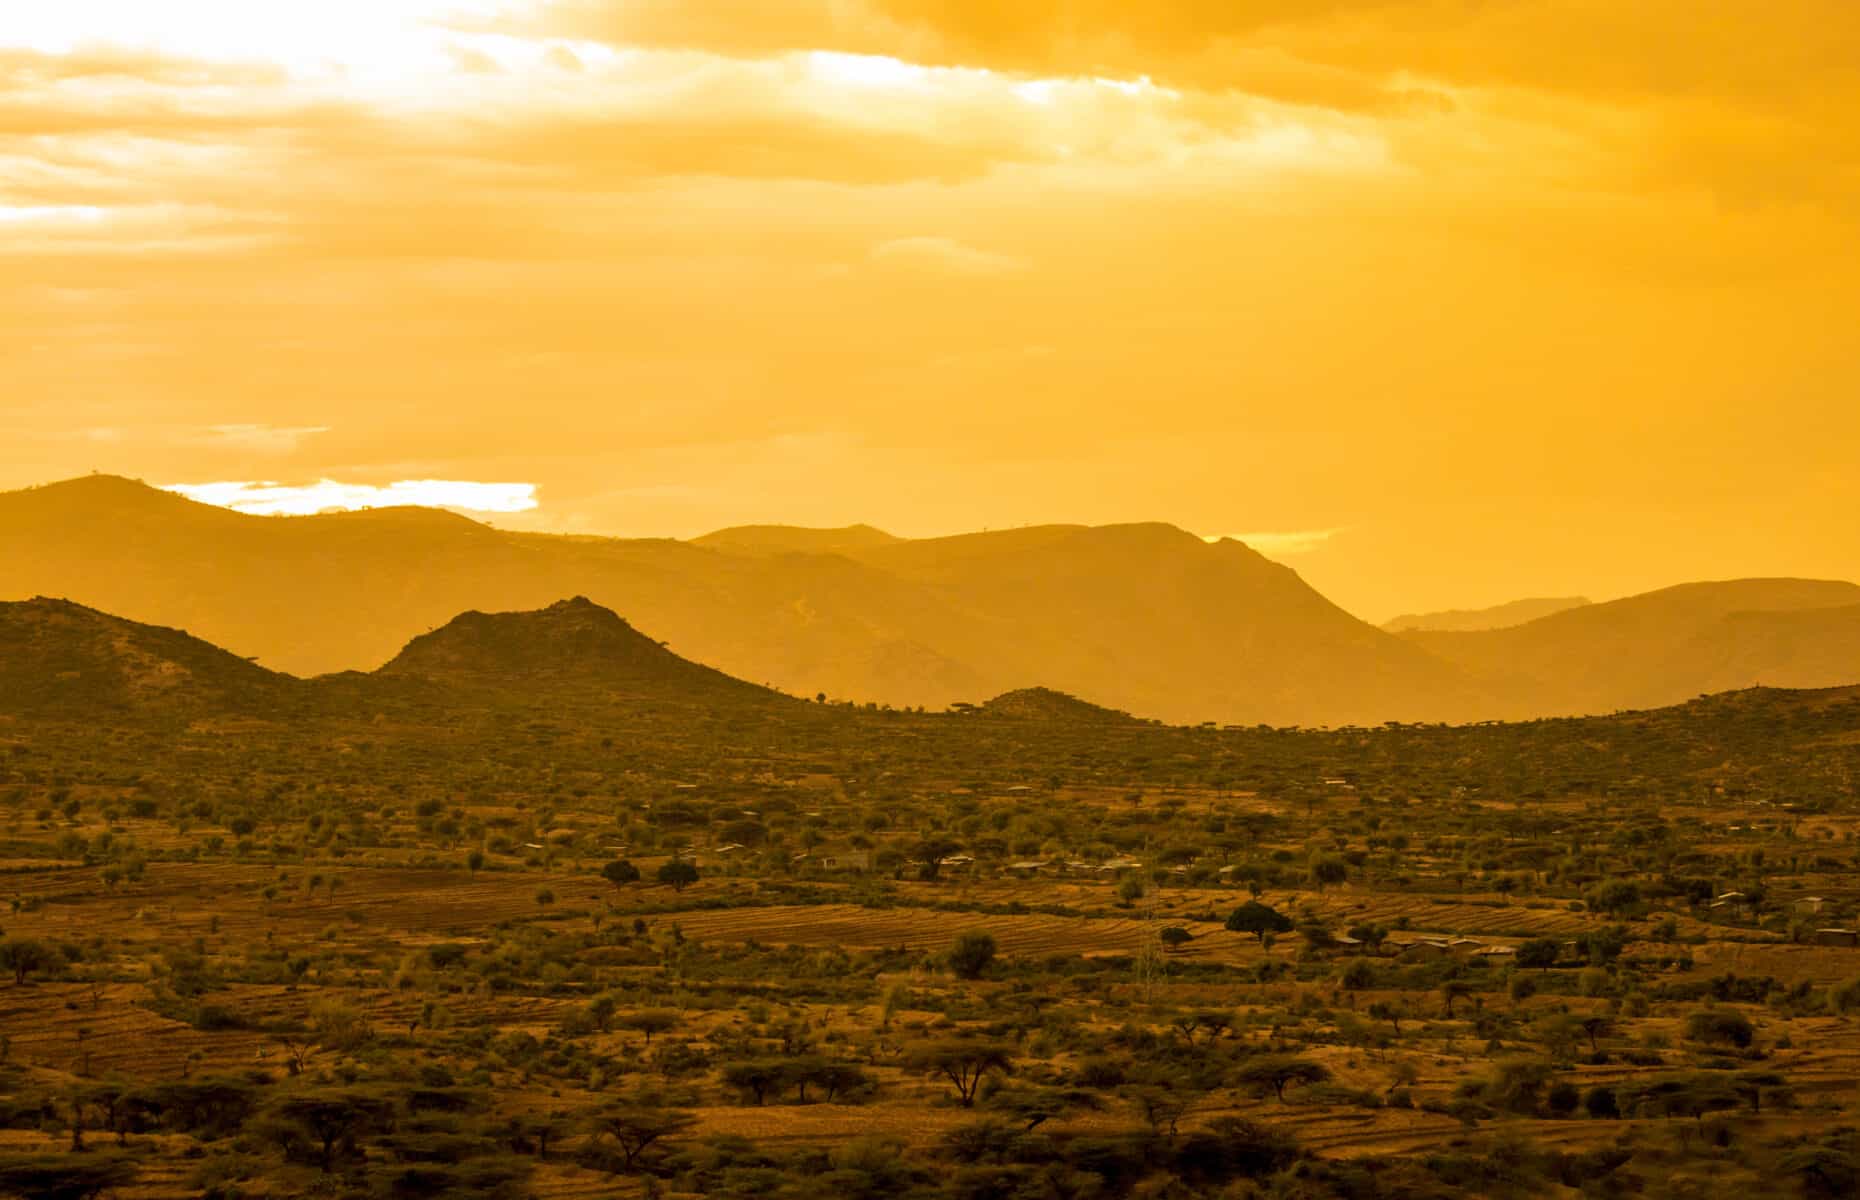 Desert and mountains of Eastern Ethiopia near Somalia